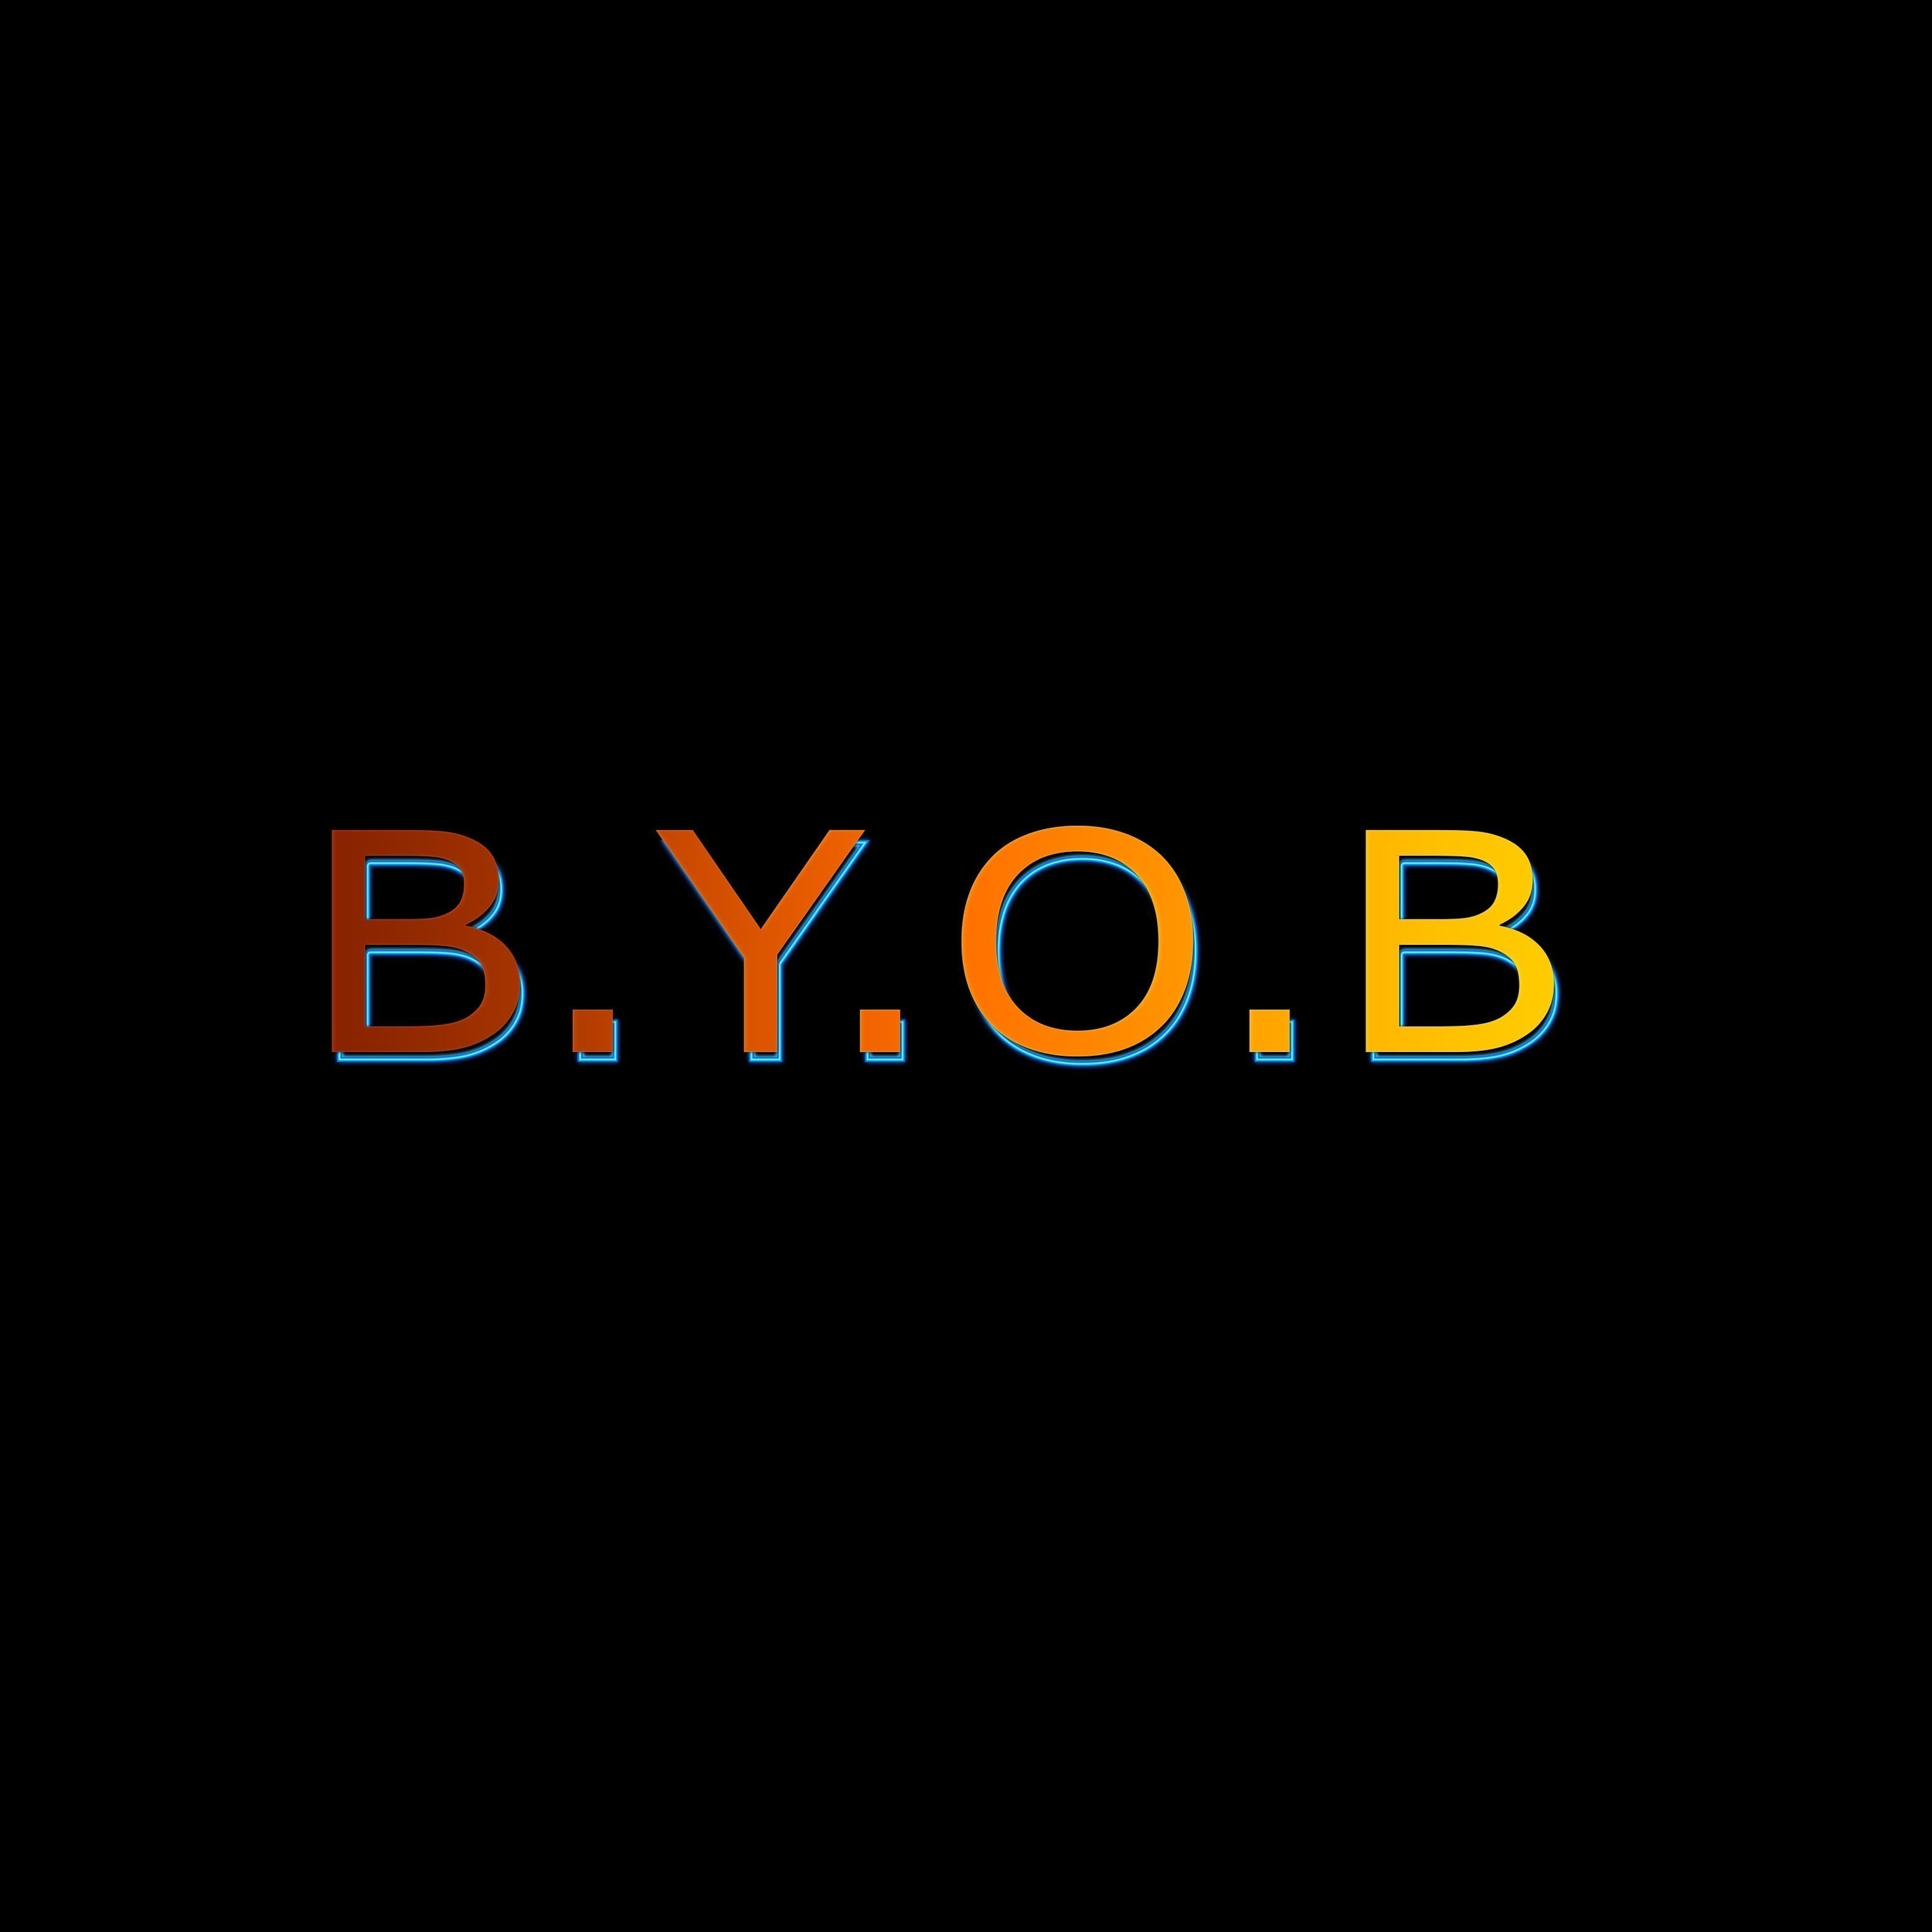 B.y.o.b